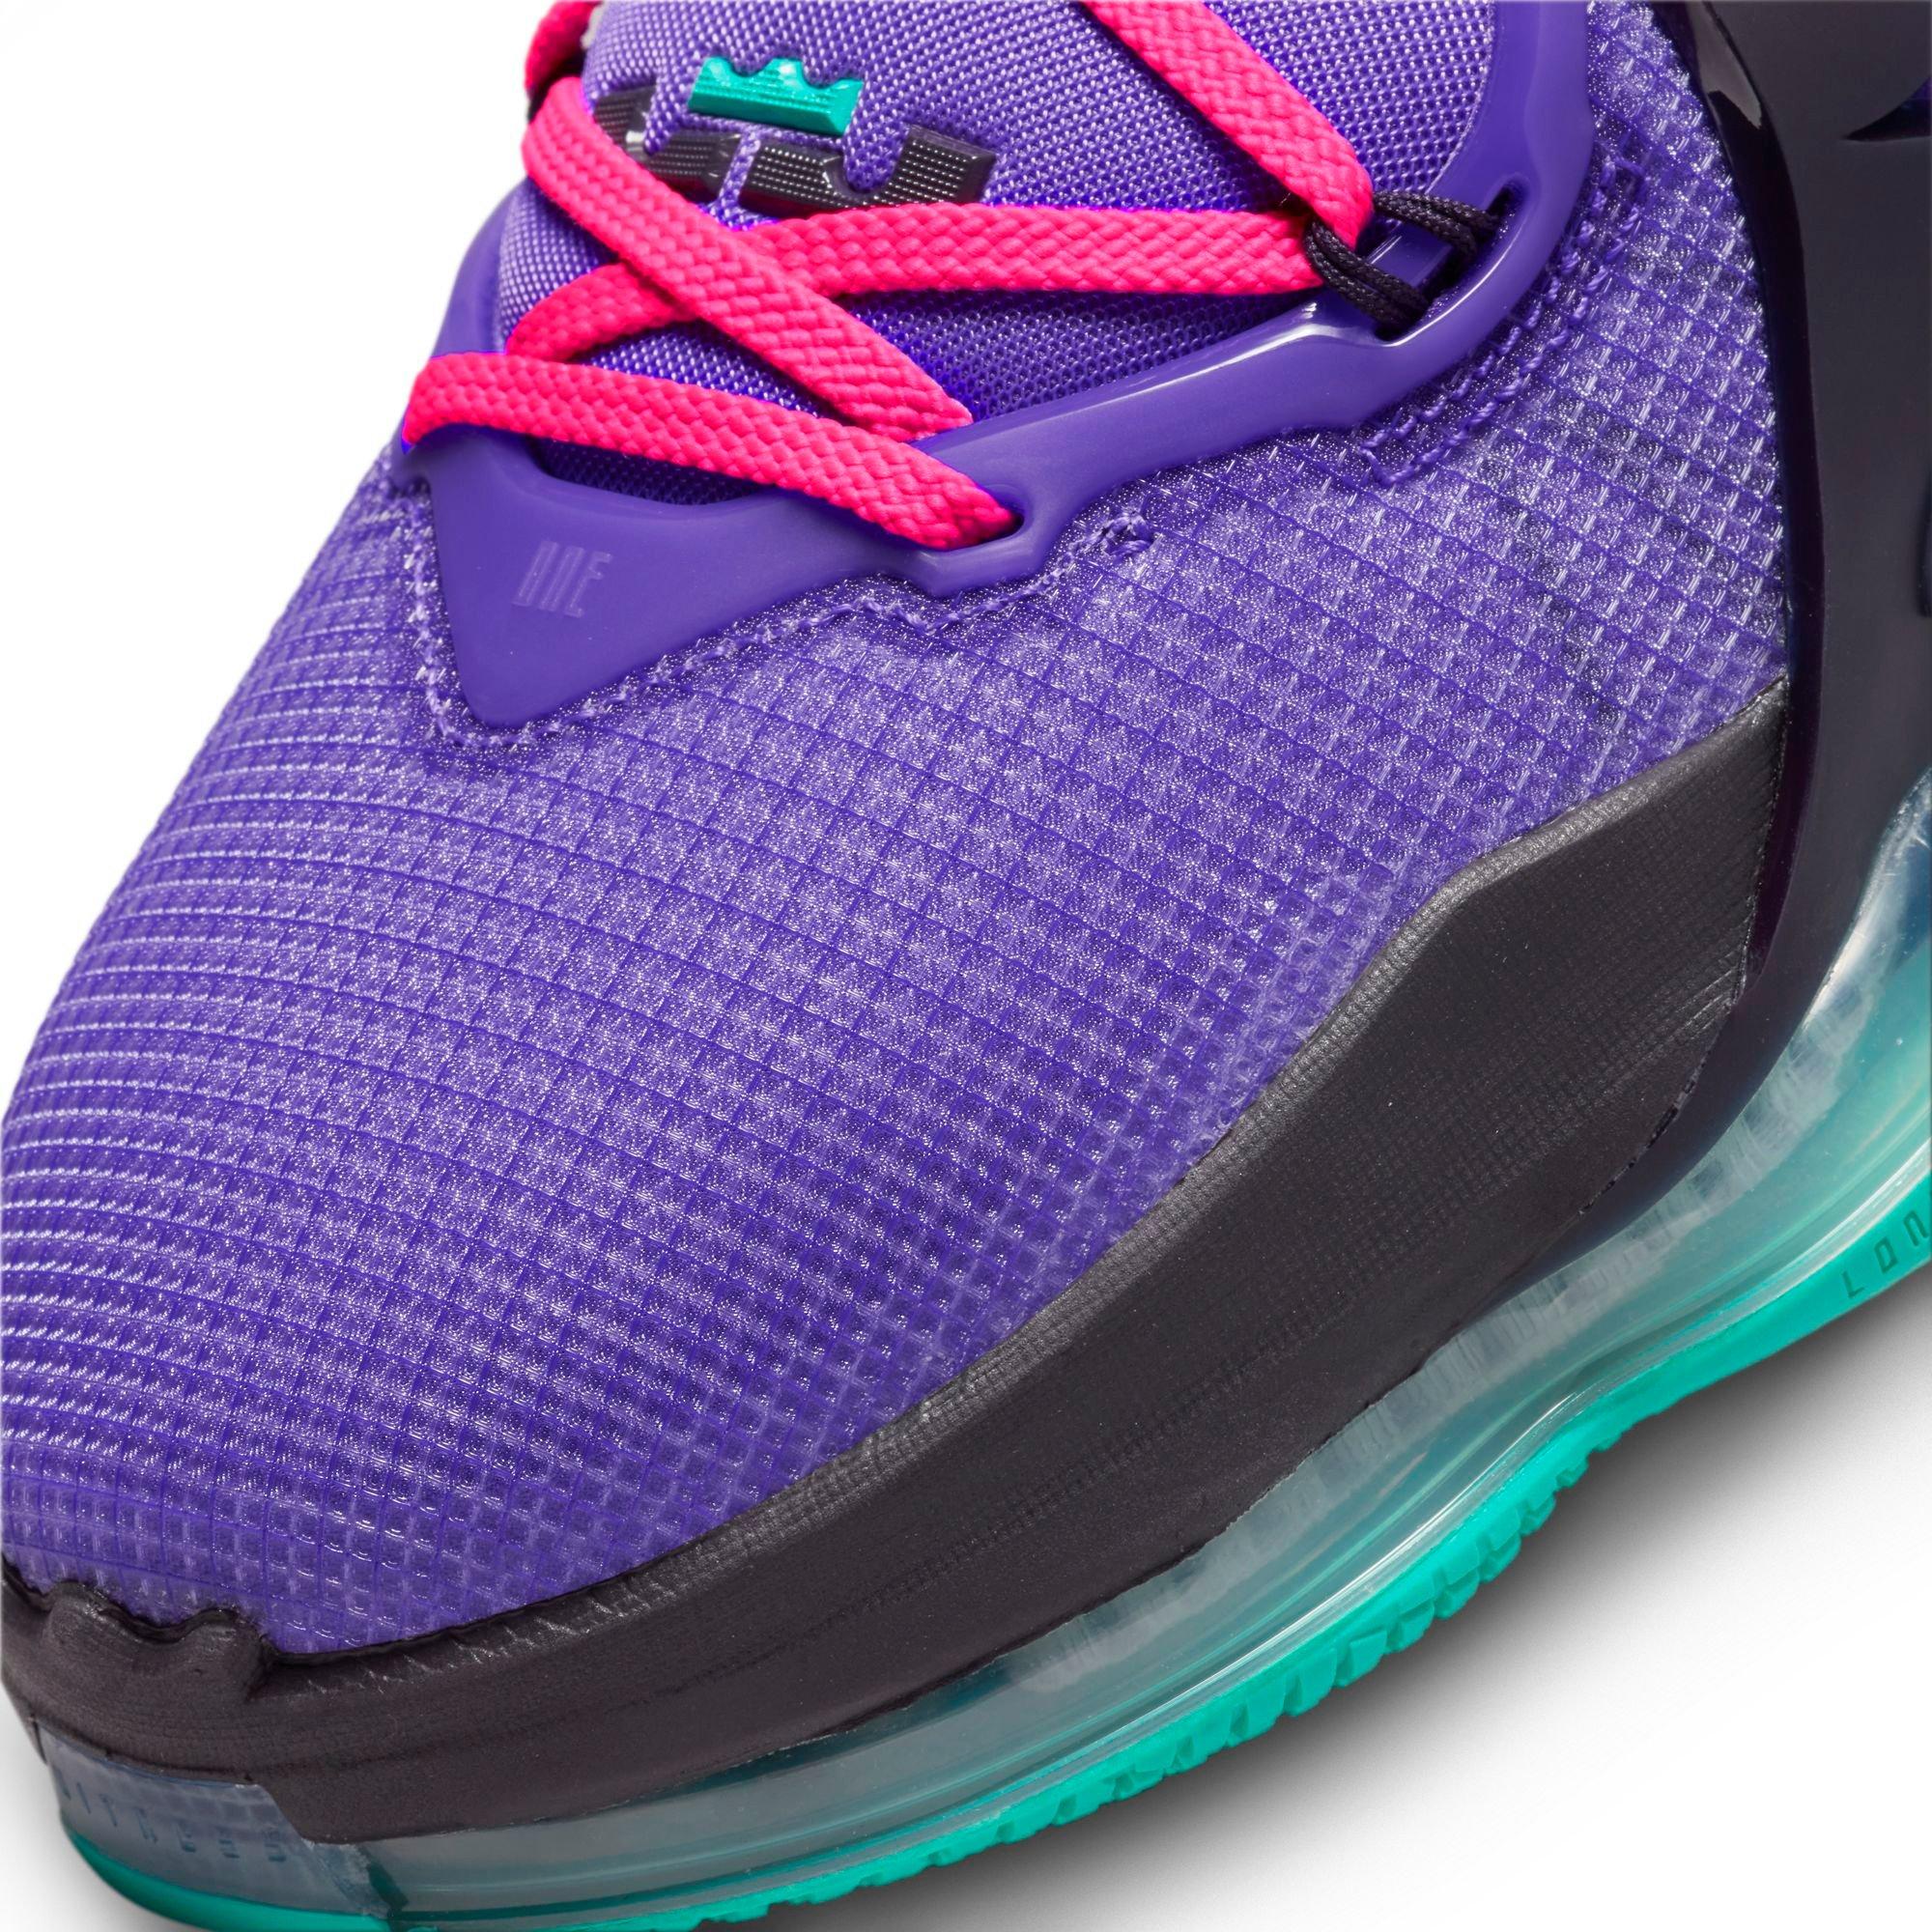 Nike LeBron James XIX 19 Men's Basketball Shoes Red Pink Purple Size 10  CZ0203